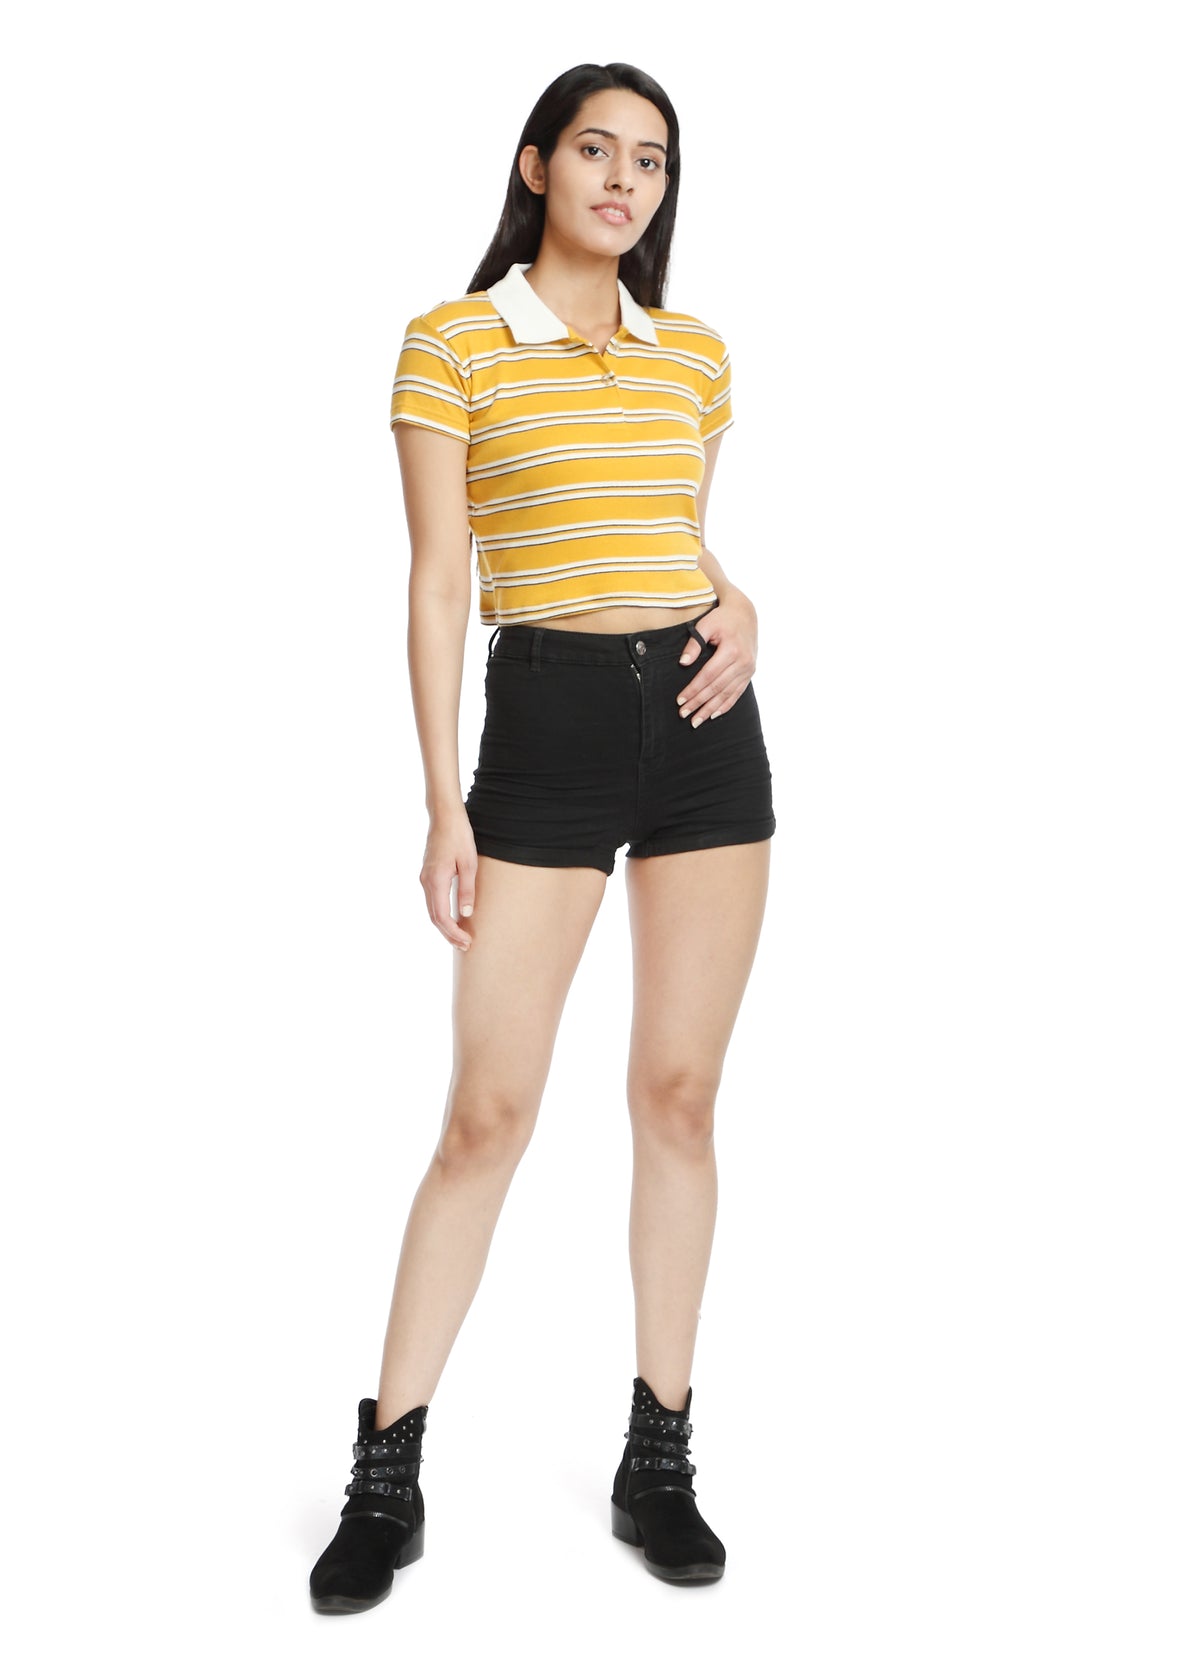 Crop Polo T-shirt yellow&white striped